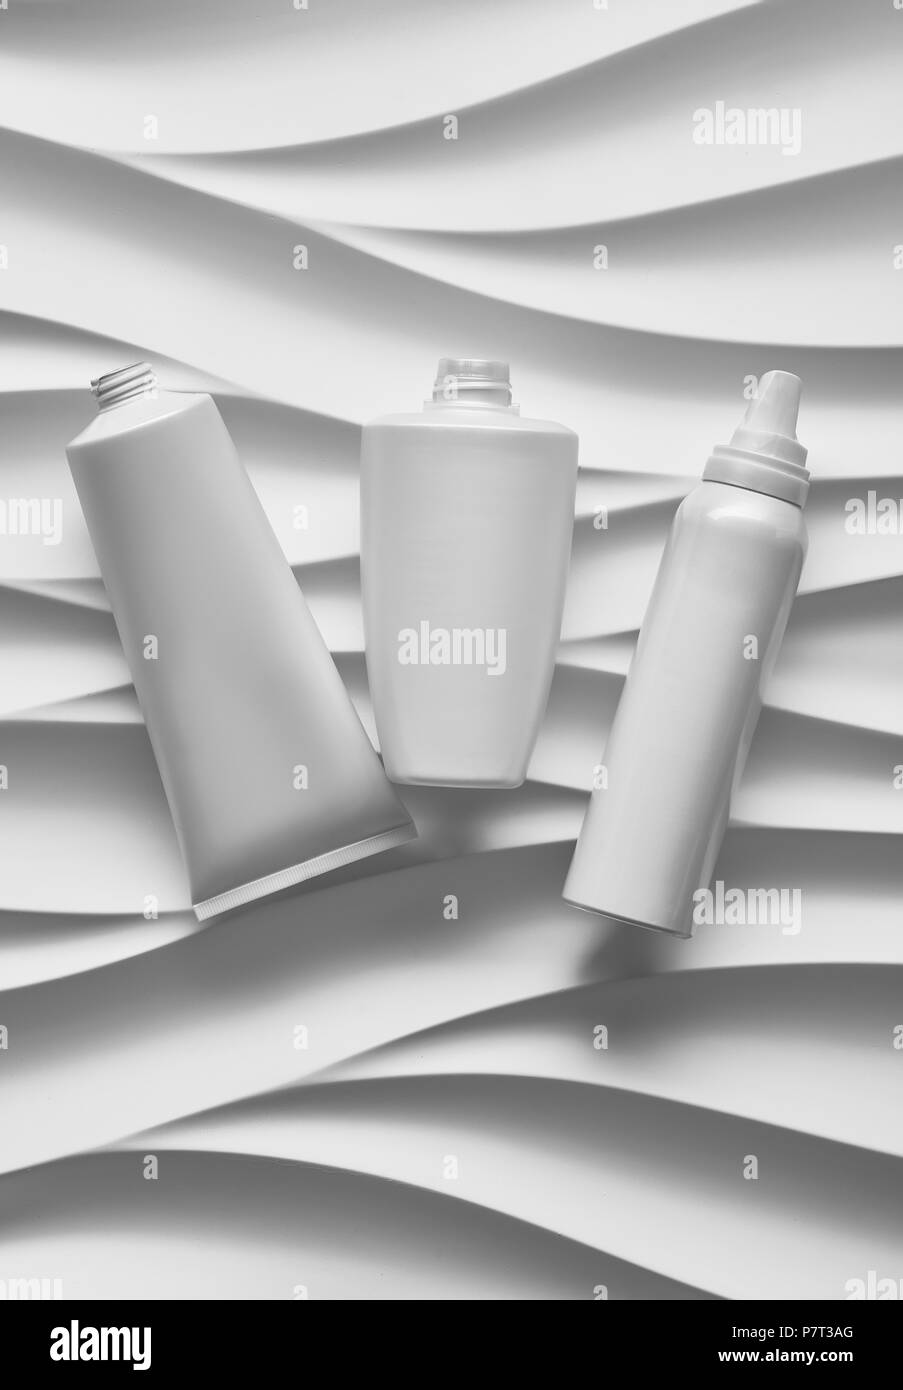 Belle affiche de format avec des vagues gris fond abstrait avec tonalités grisâtre, avec des contenants de plastique blanc propre : pot de crème, bouteilles, t Banque D'Images